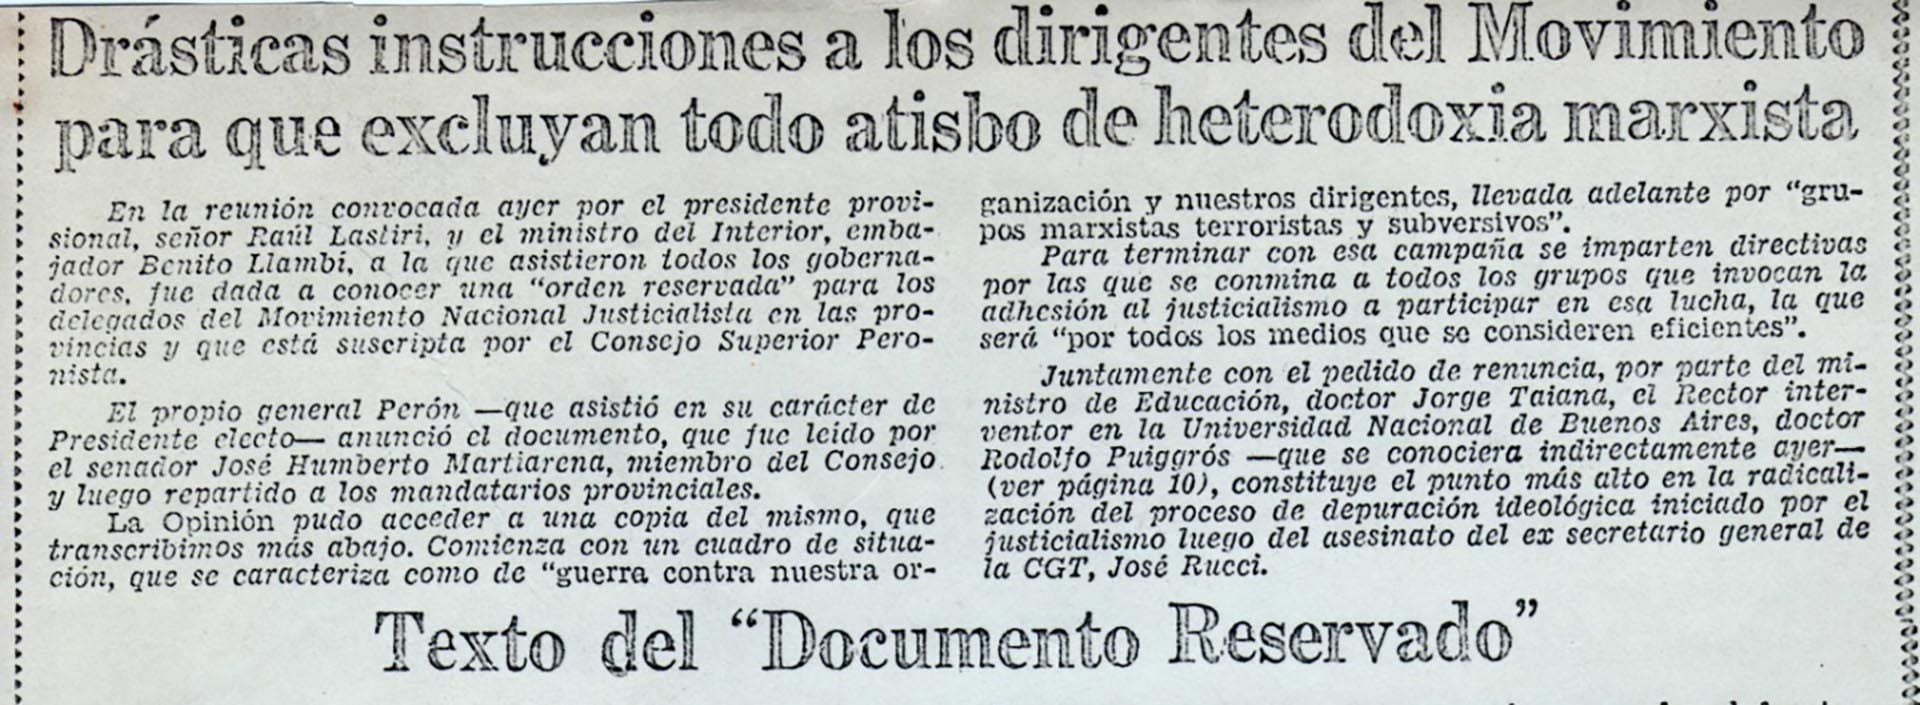 Documento publicado en La Opinión el 2 de octubre de 1973